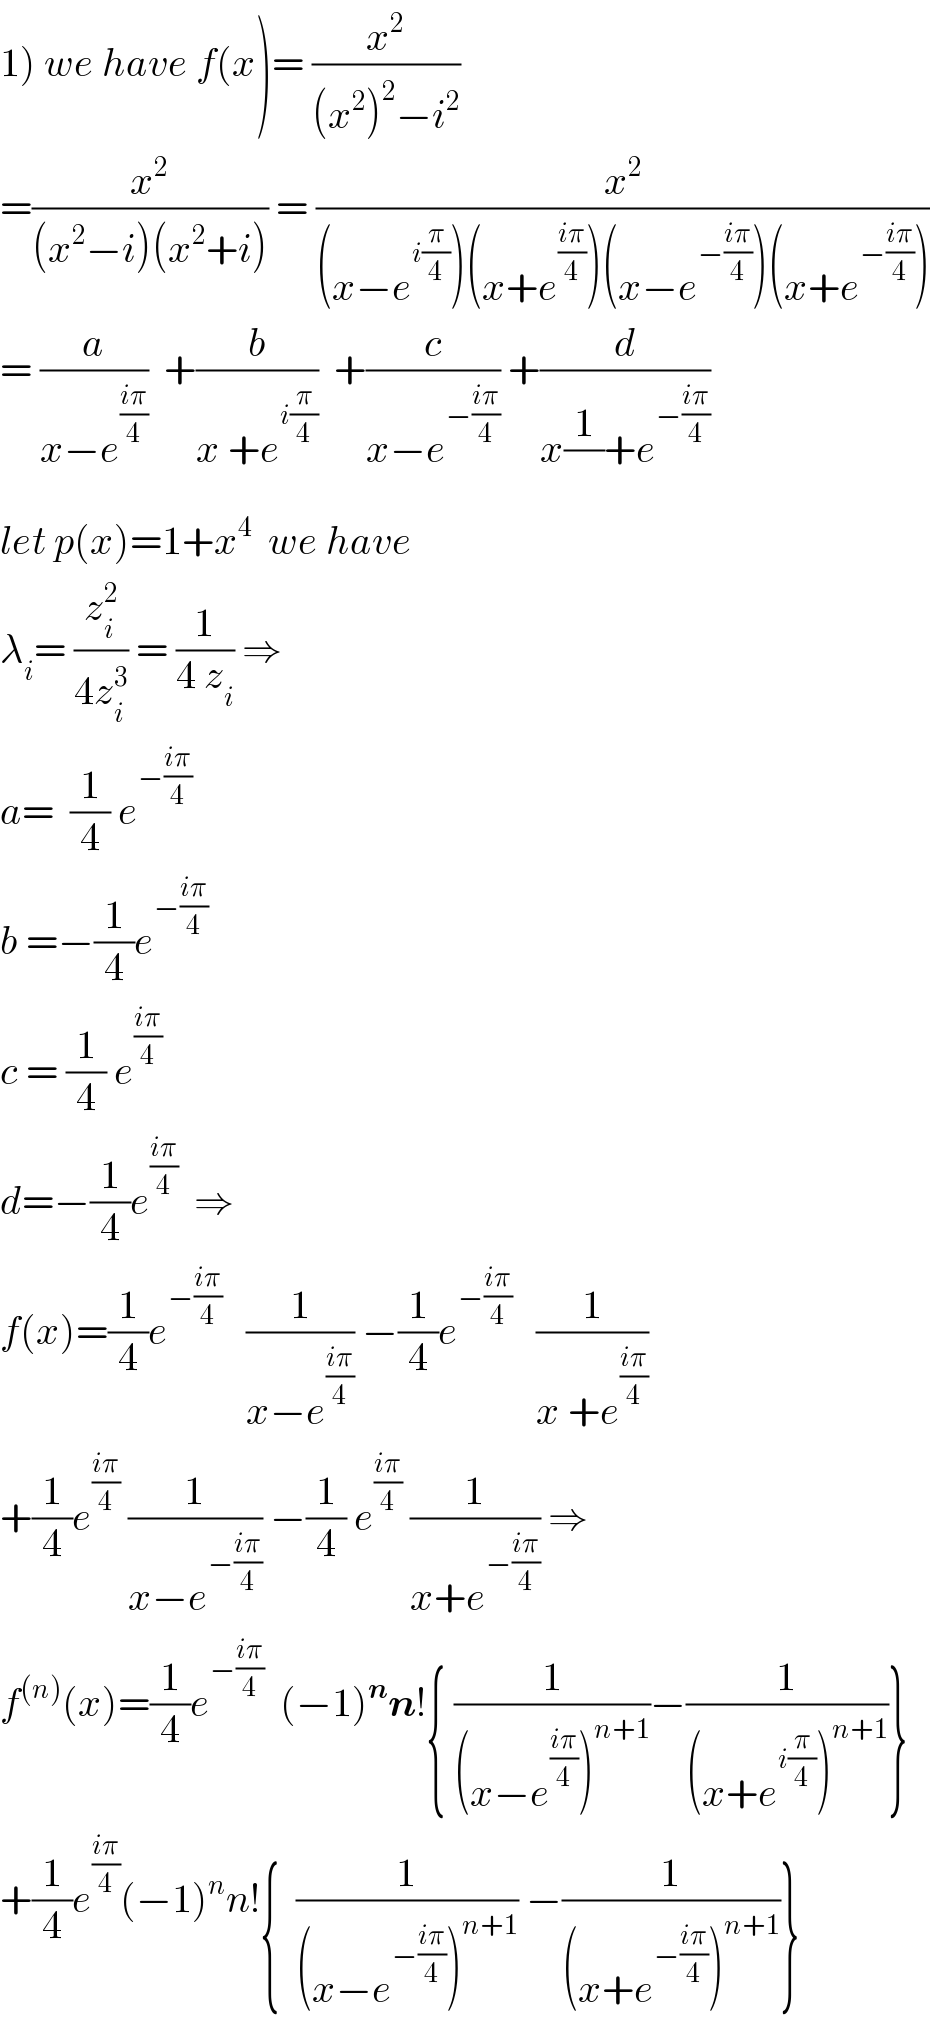 1) we have f(x)= (x^2 /((x^2 )^2 −i^2 ))  =(x^2 /((x^2 −i)(x^2 +i))) = (x^2 /((x−e^(i(π/4)) )(x+e^((iπ)/4) )(x−e^(−((iπ)/4)) )(x+e^(−((iπ)/4)) )))  = (a/(x−e^((iπ)/4) ))  +(b/(x +e^(i(π/4)) ))  +(c/(x−e^(−((iπ)/4)) )) +(d/(x(1/)+e^(−((iπ)/4)) ))  let p(x)=1+x^4   we have  λ_i = (z_i ^2 /(4z_i ^3 )) = (1/(4 z_i )) ⇒  a=  (1/4) e^(−((iπ)/4))   b =−(1/4)e^(−((iπ)/4))   c = (1/4) e^((iπ)/4)   d=−(1/4)e^((iπ)/4)   ⇒  f(x)=(1/4)e^(−((iπ)/4))    (1/(x−e^((iπ)/4) )) −(1/4)e^(−((iπ)/4))    (1/(x +e^((iπ)/4) ))  +(1/4)e^((iπ)/4)  (1/(x−e^(−((iπ)/4)) )) −(1/4) e^((iπ)/4)  (1/(x+e^(−((iπ)/4)) )) ⇒  f^((n)) (x)=(1/4)e^(−((iπ)/4))   (−1)^n n!{ (1/((x−e^((iπ)/4) )^(n+1) ))−(1/((x+e^(i(π/4)) )^(n+1) ))}  +(1/4)e^((iπ)/4) (−1)^n n!{  (1/((x−e^(−((iπ)/4)) )^(n+1) )) −(1/((x+e^(−((iπ)/4)) )^(n+1) ))}  